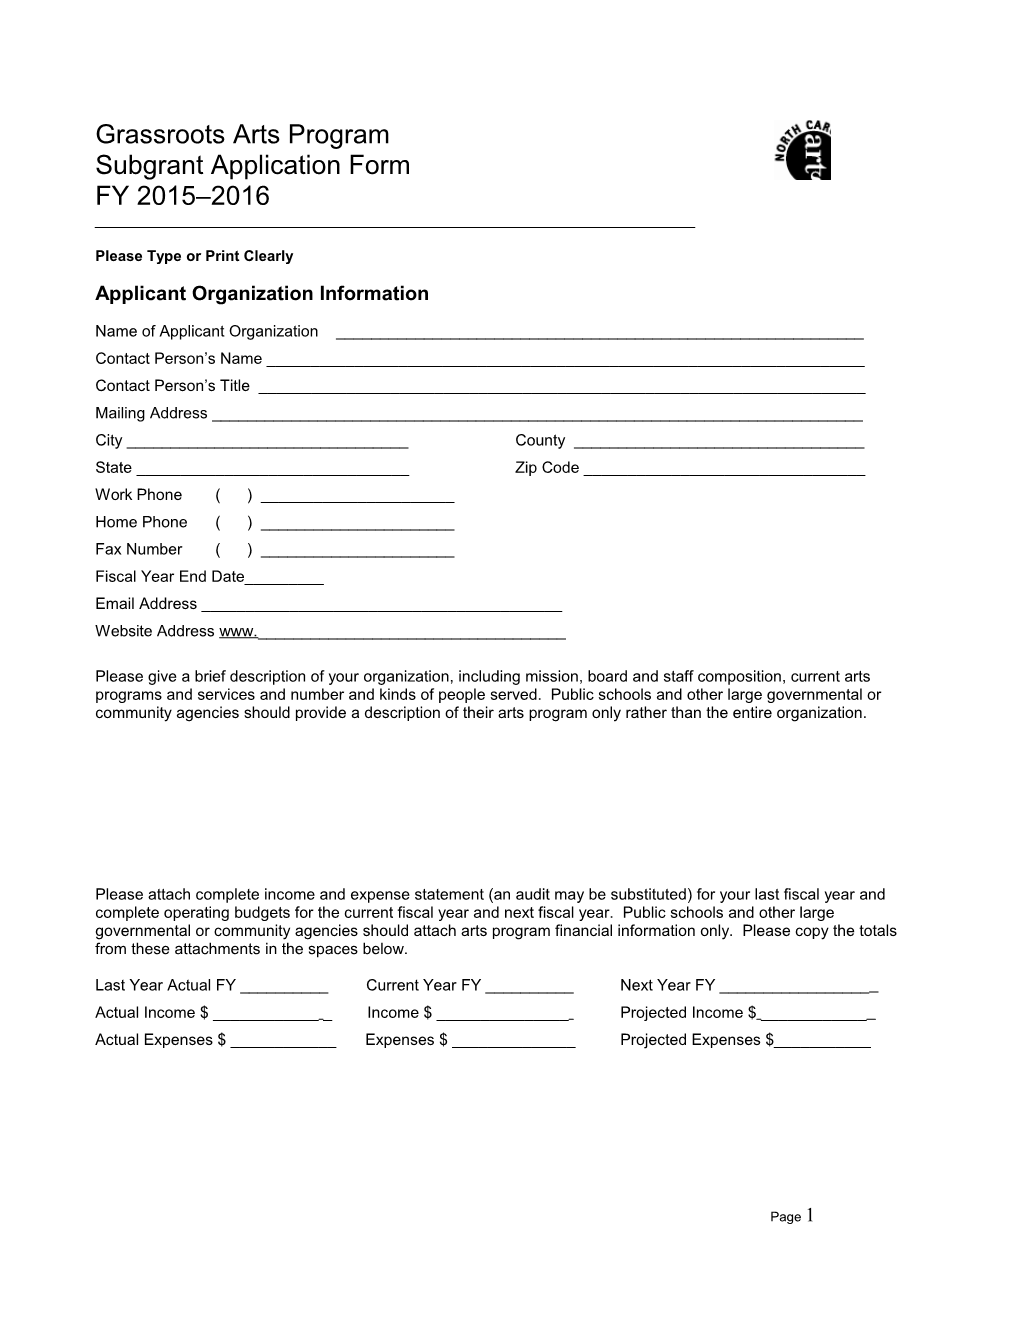 Grassroots Arts Program Subgrant Application Form 2002-03 1